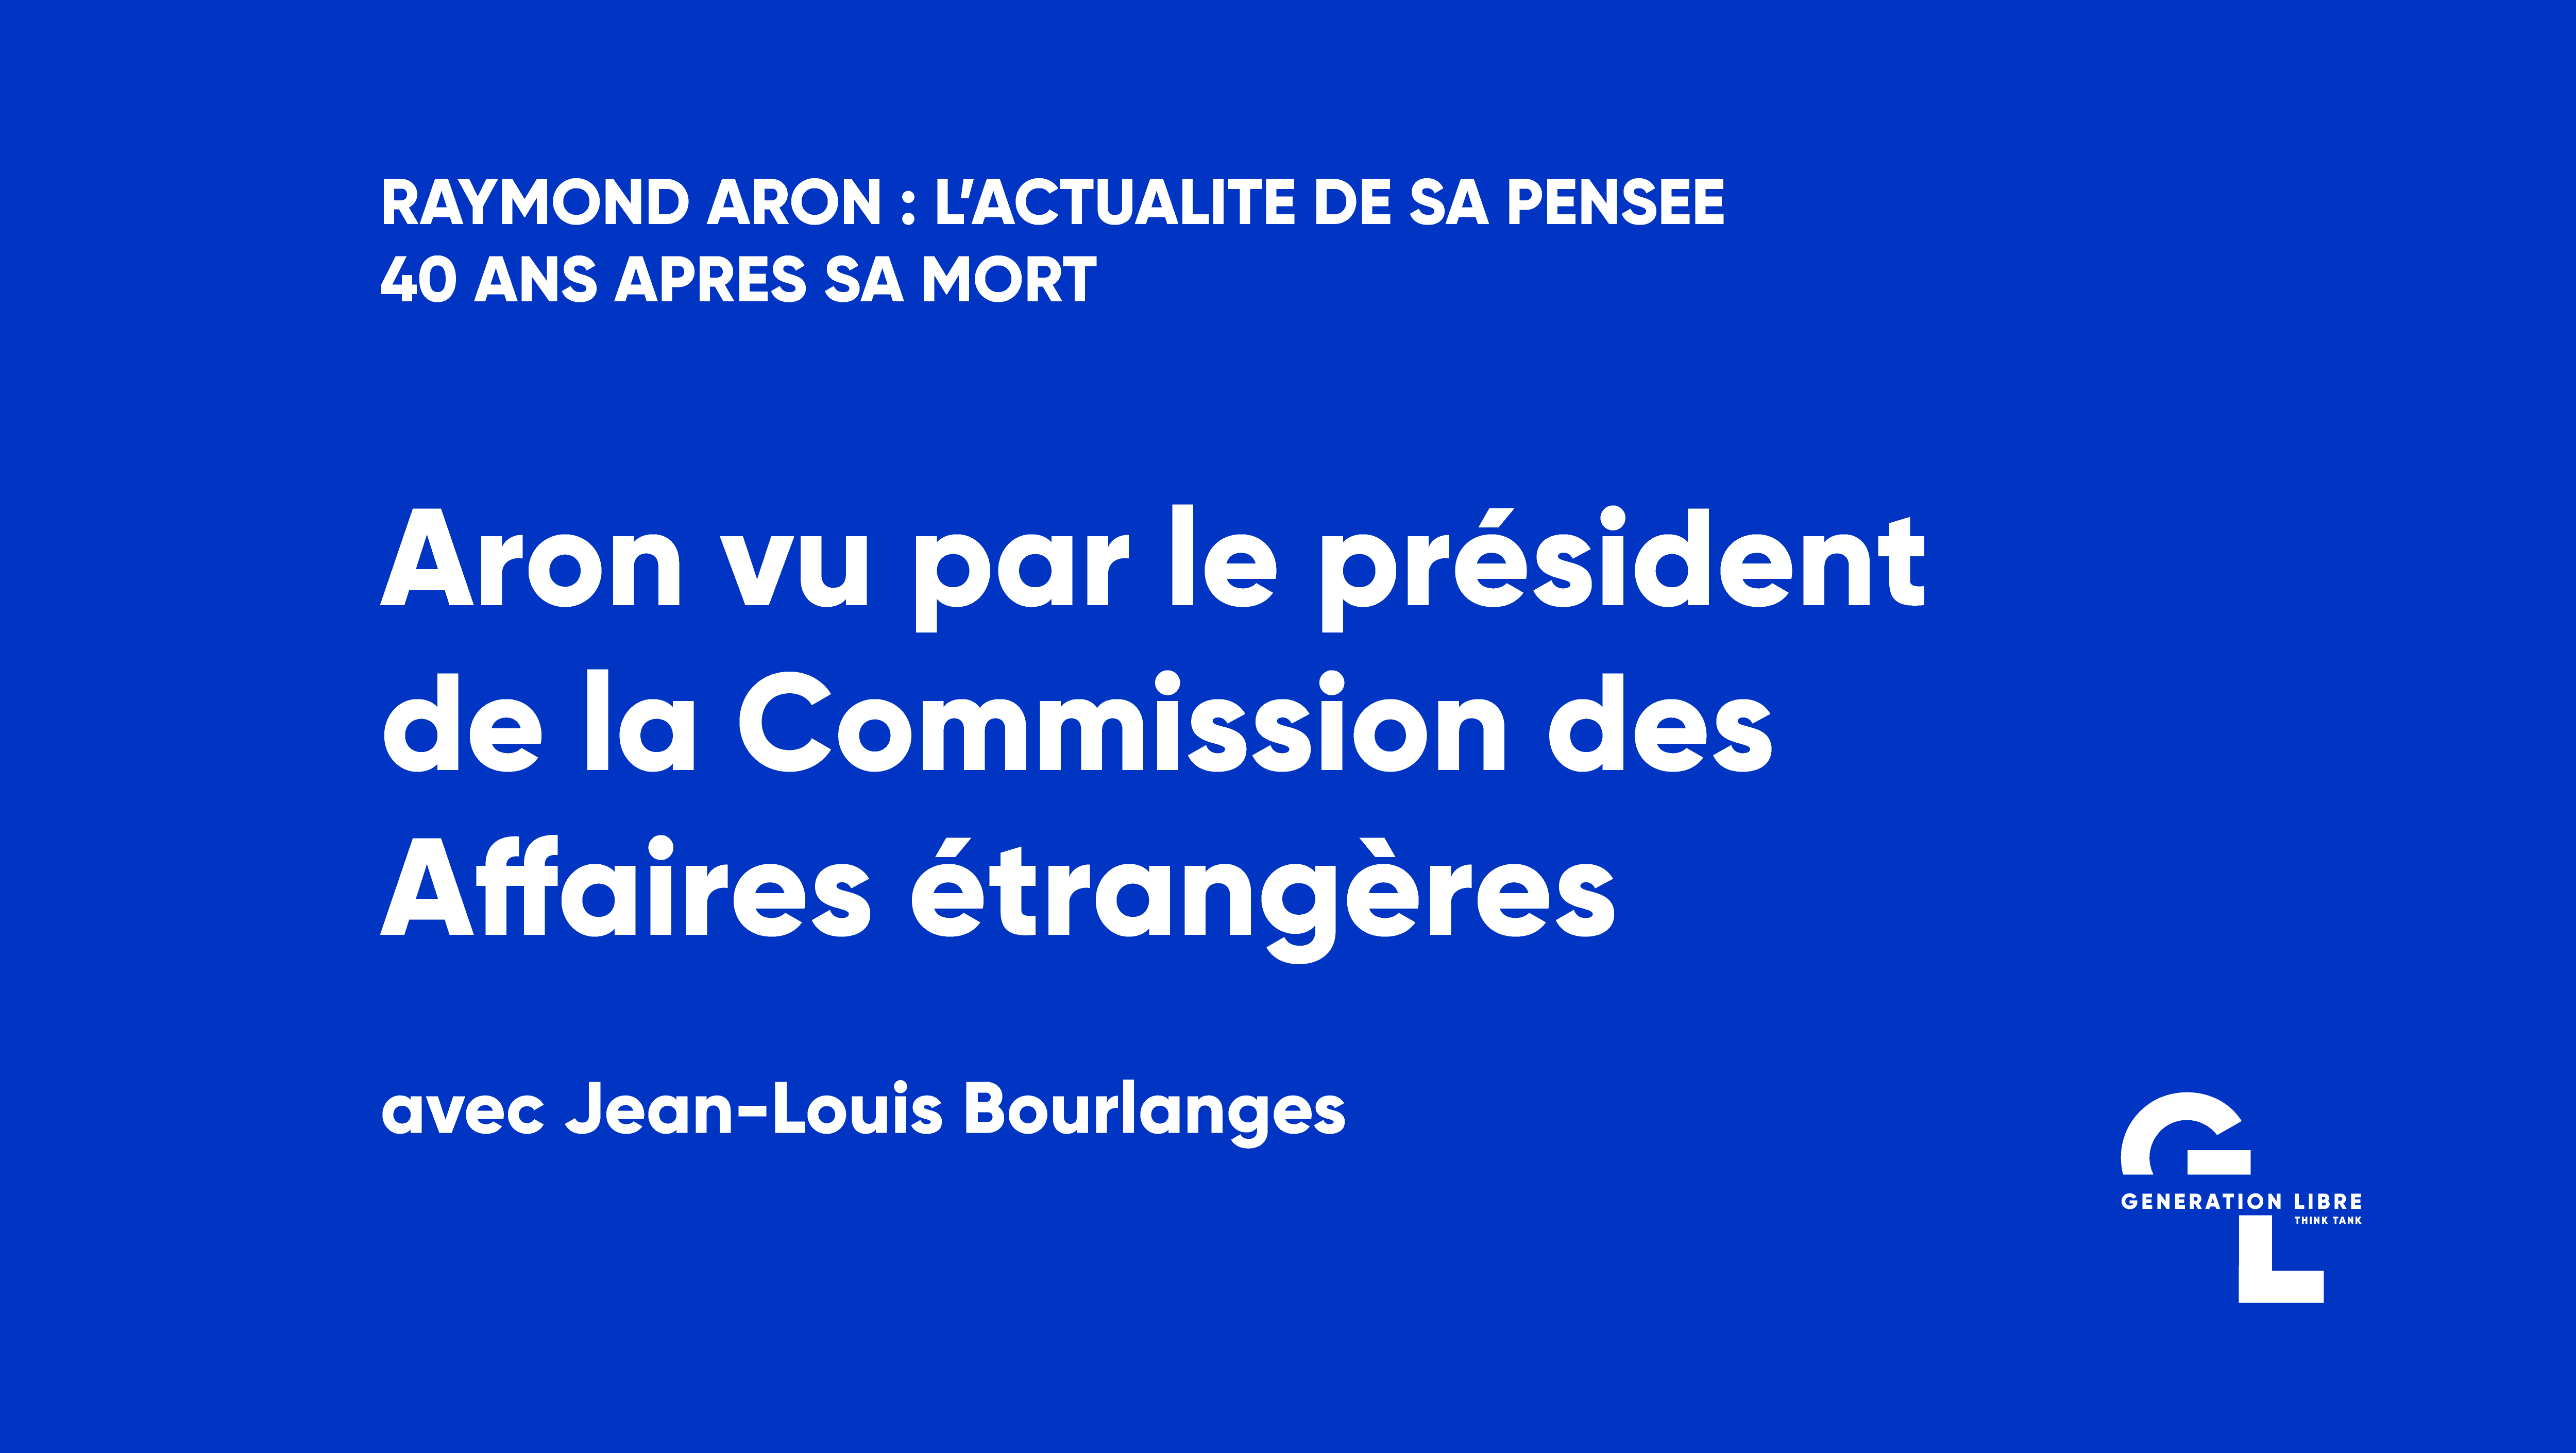 Interview : Aron vu par Jean-Louis Bourlanges